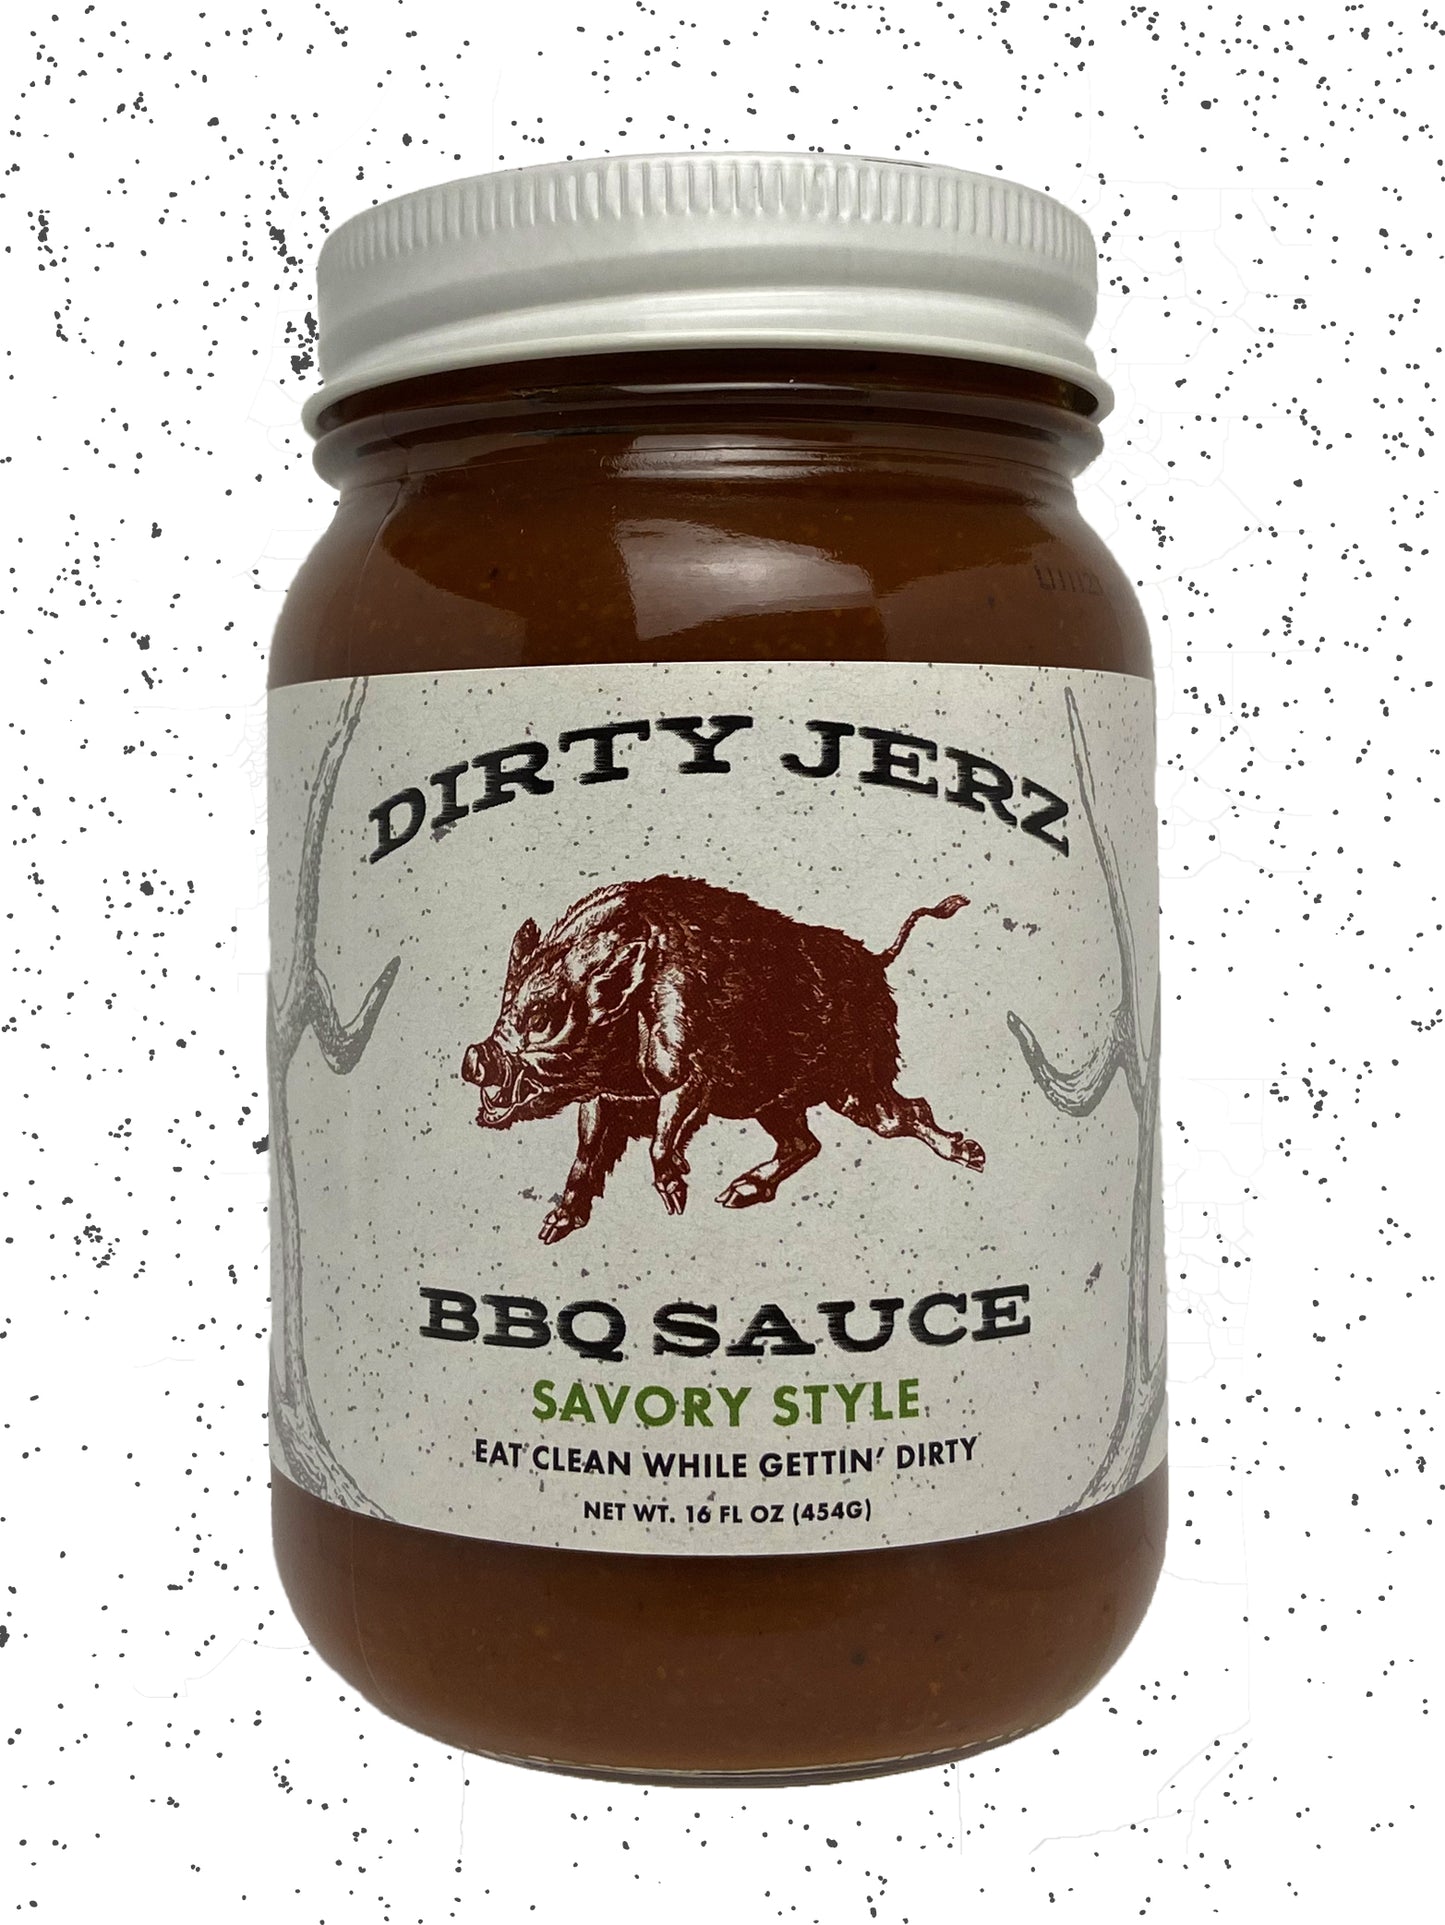 Dirty Jerz BBQ Sauce - Savory Style